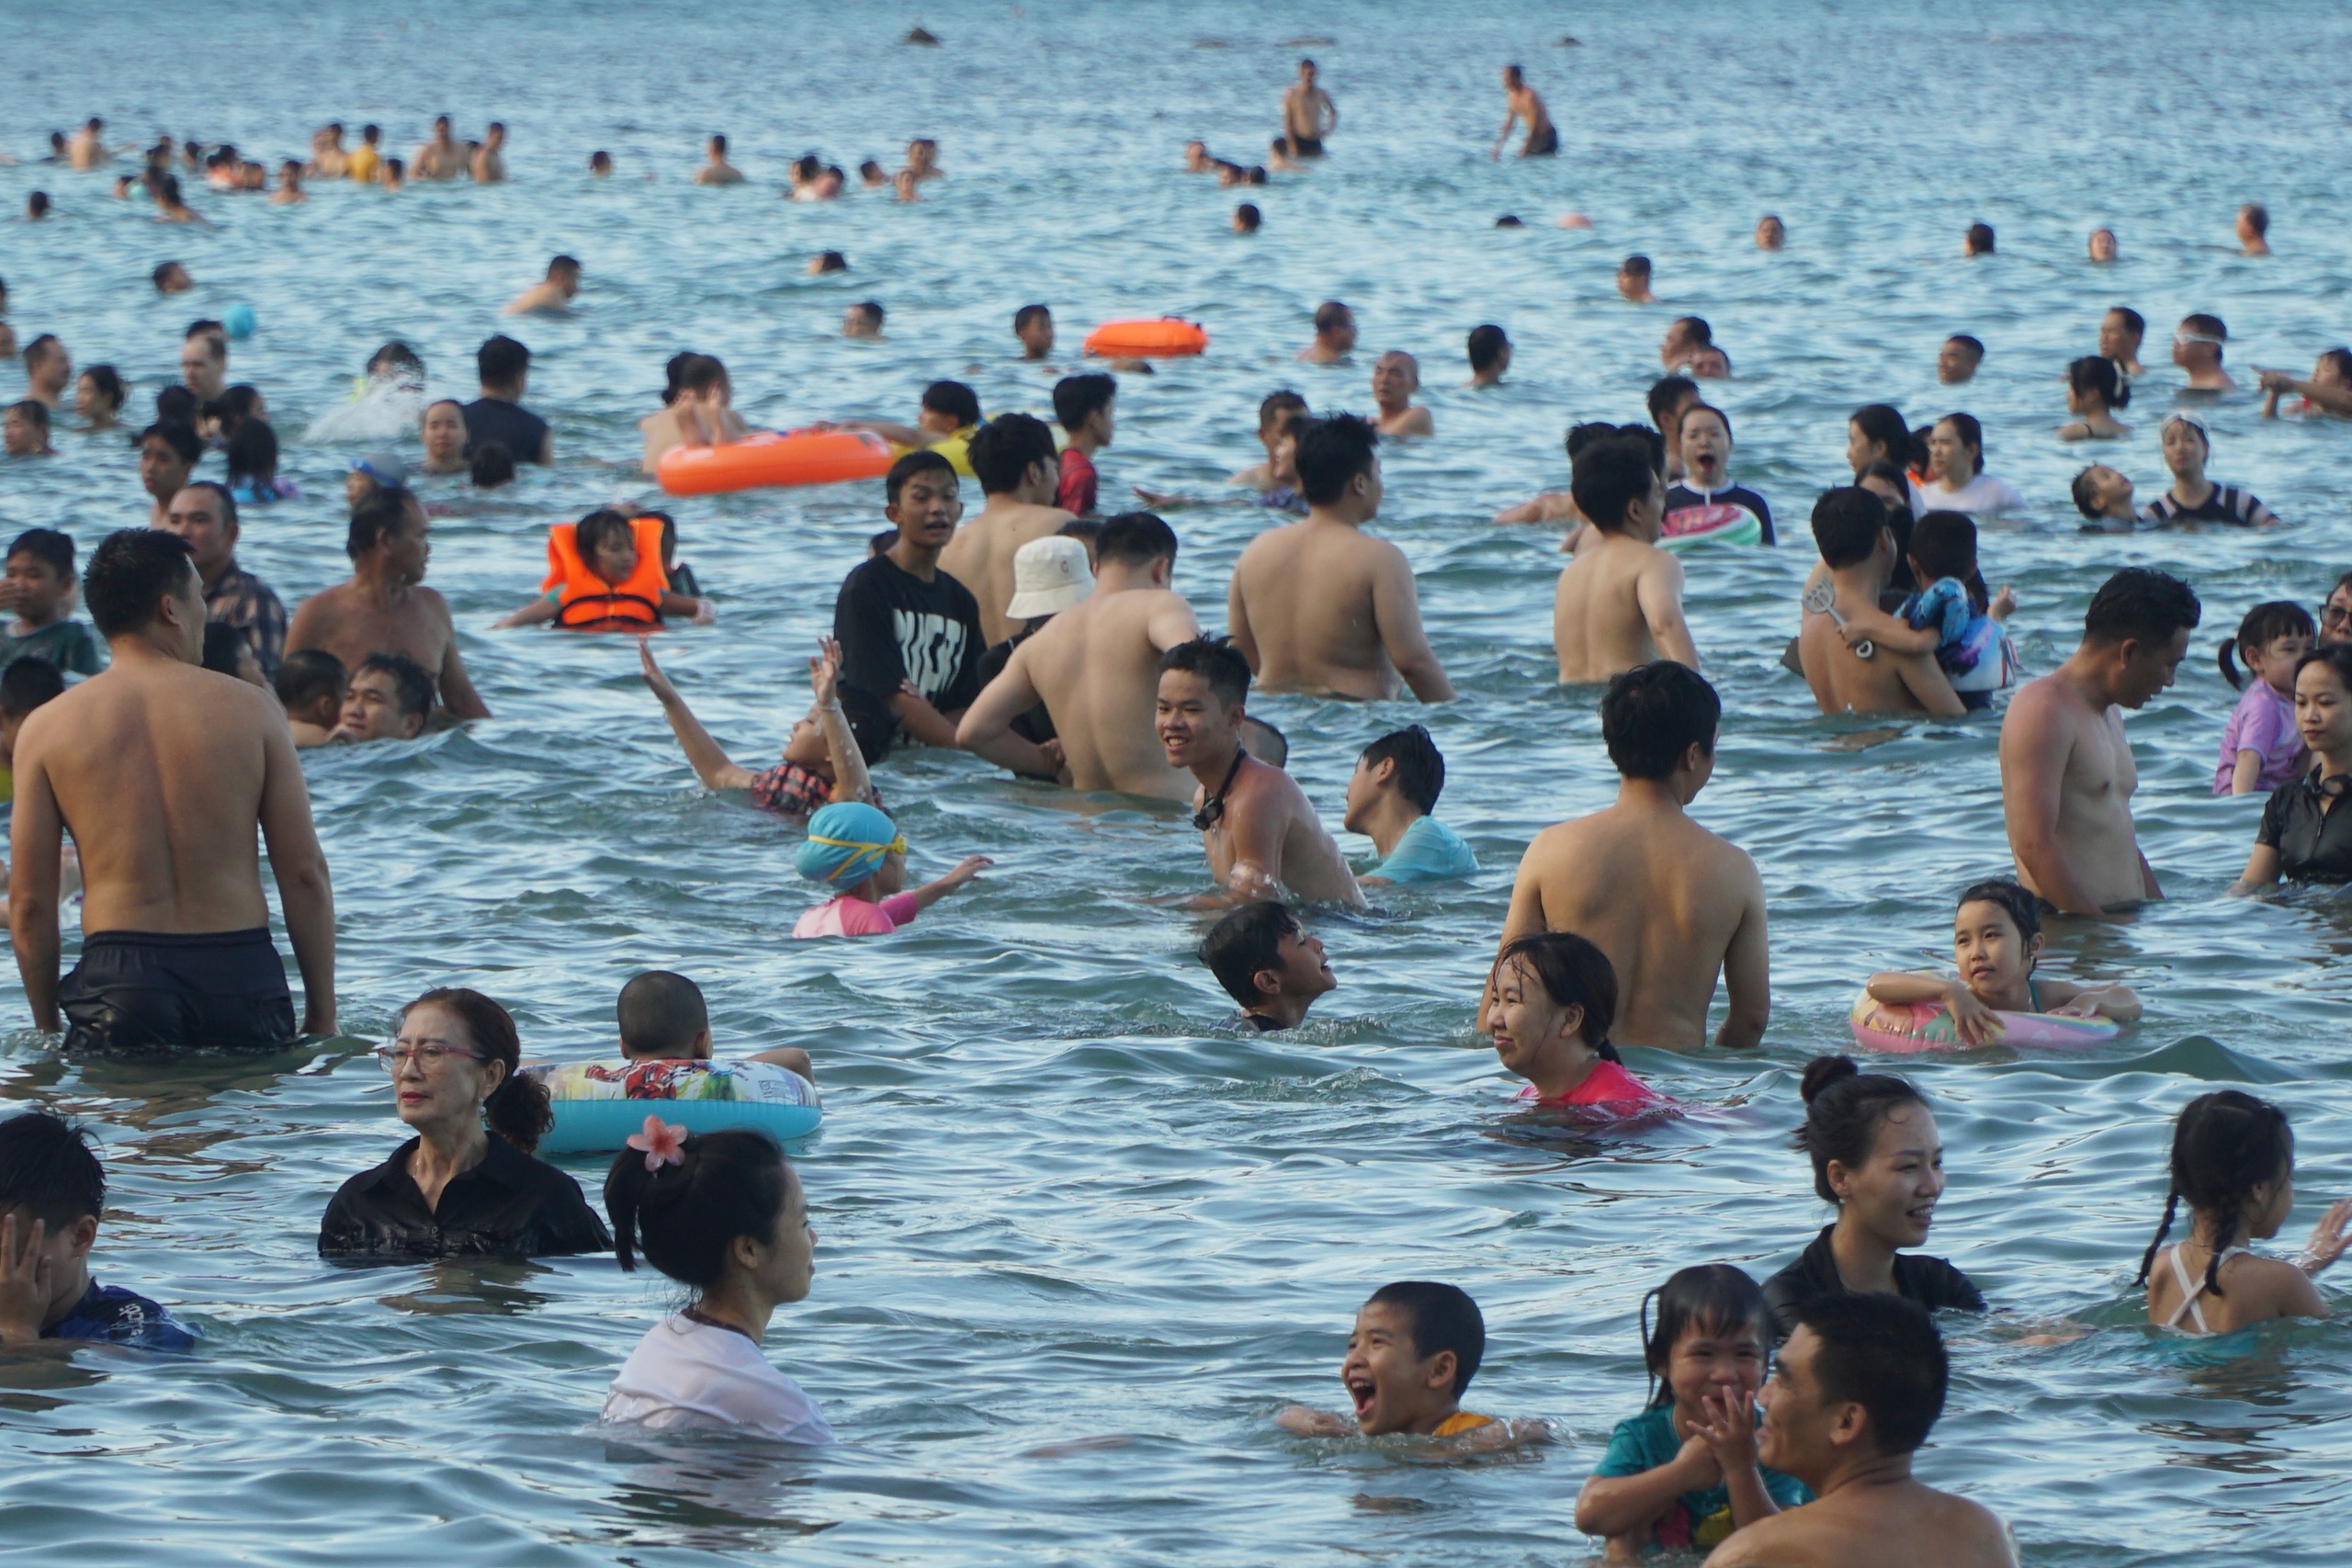 Kỳ nghỉ lễ 30.4 -1.5 kéo dài đến 5 ngày, ngoài người dân địa phương thì cũng có rất đông khách du lịch đến tắm biển Nha Trang